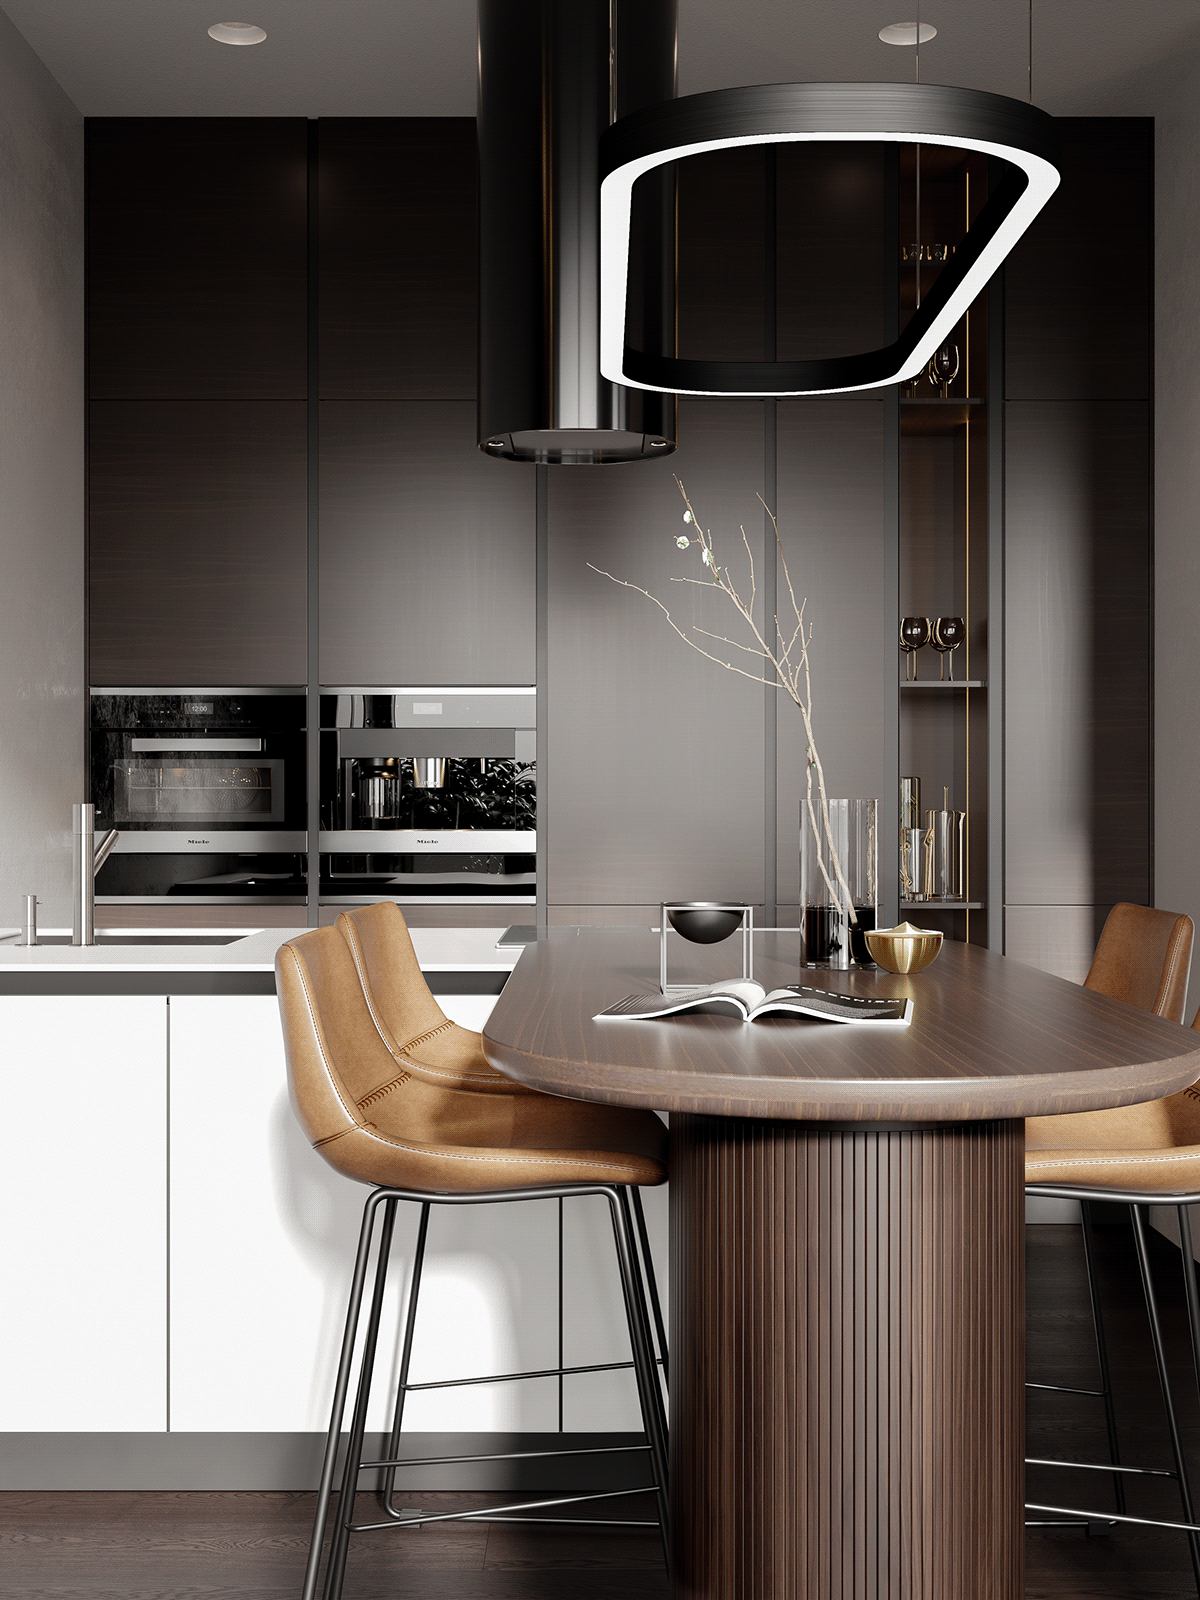 3ds max bedroom corona renderer Interior kitchen living room modern interioir Render